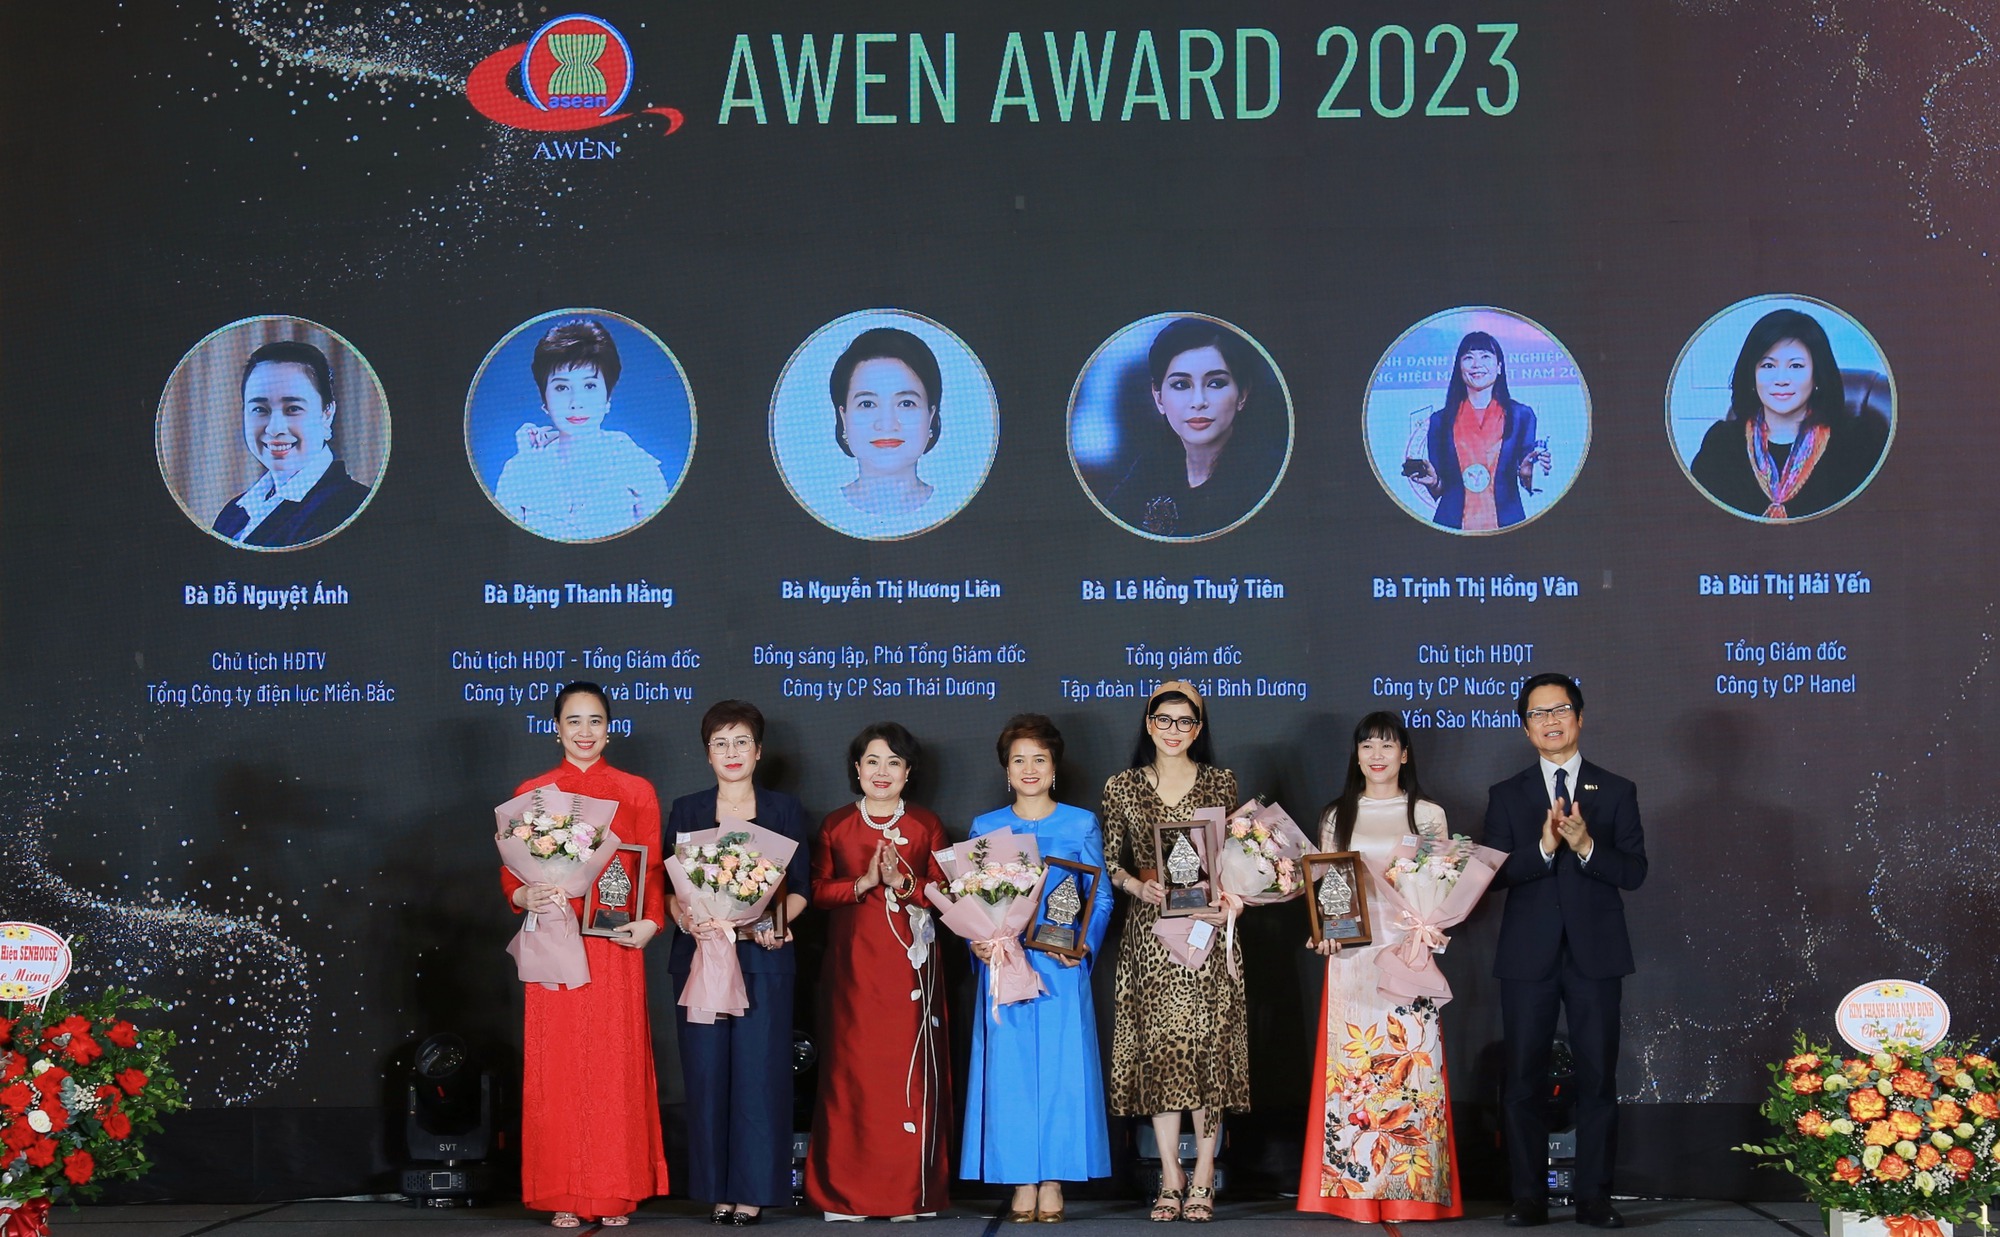 Tối 22/9/2023, tại Hà Nội đã diễn ra Lễ công bố Giải thưởng ASEAN 2023 và trao tặng danh hiệu Nữ Doanh nhân ASEAN tiêu biểu năm 2023 của Mạng lưới Doanh nhân nữ ASEAN (AWEN). Bà Đỗ Nguyệt Ánh – Chủ tịch HĐTV Tổng công ty Điện lực miền Bắc (EVNNPC) vinh dự là 1 trong 6 nữ doanh nhân của Việt Nam được vinh danh lần này.